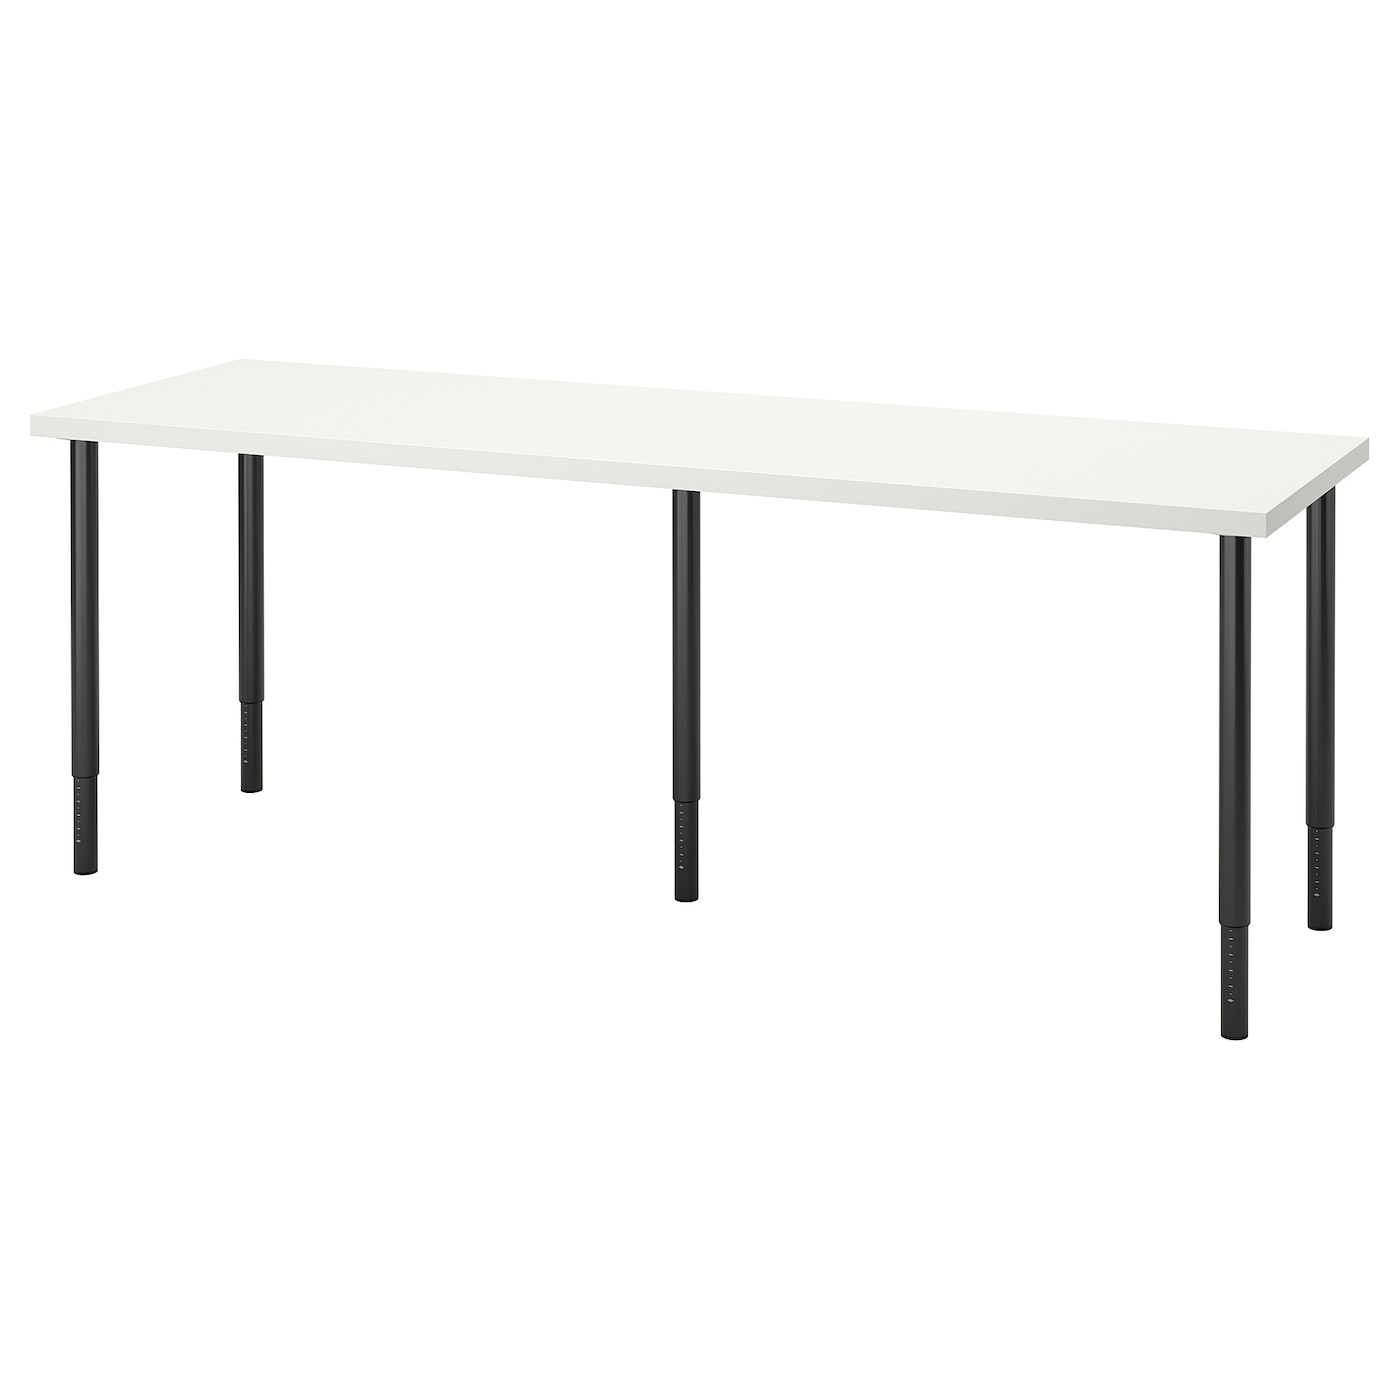 Письменный стол - IKEA LAGKAPTEN/OLOV, 200х60х63-93 см, белый/черный, ЛАГКАПТЕН/ОЛОВ ИКЕА